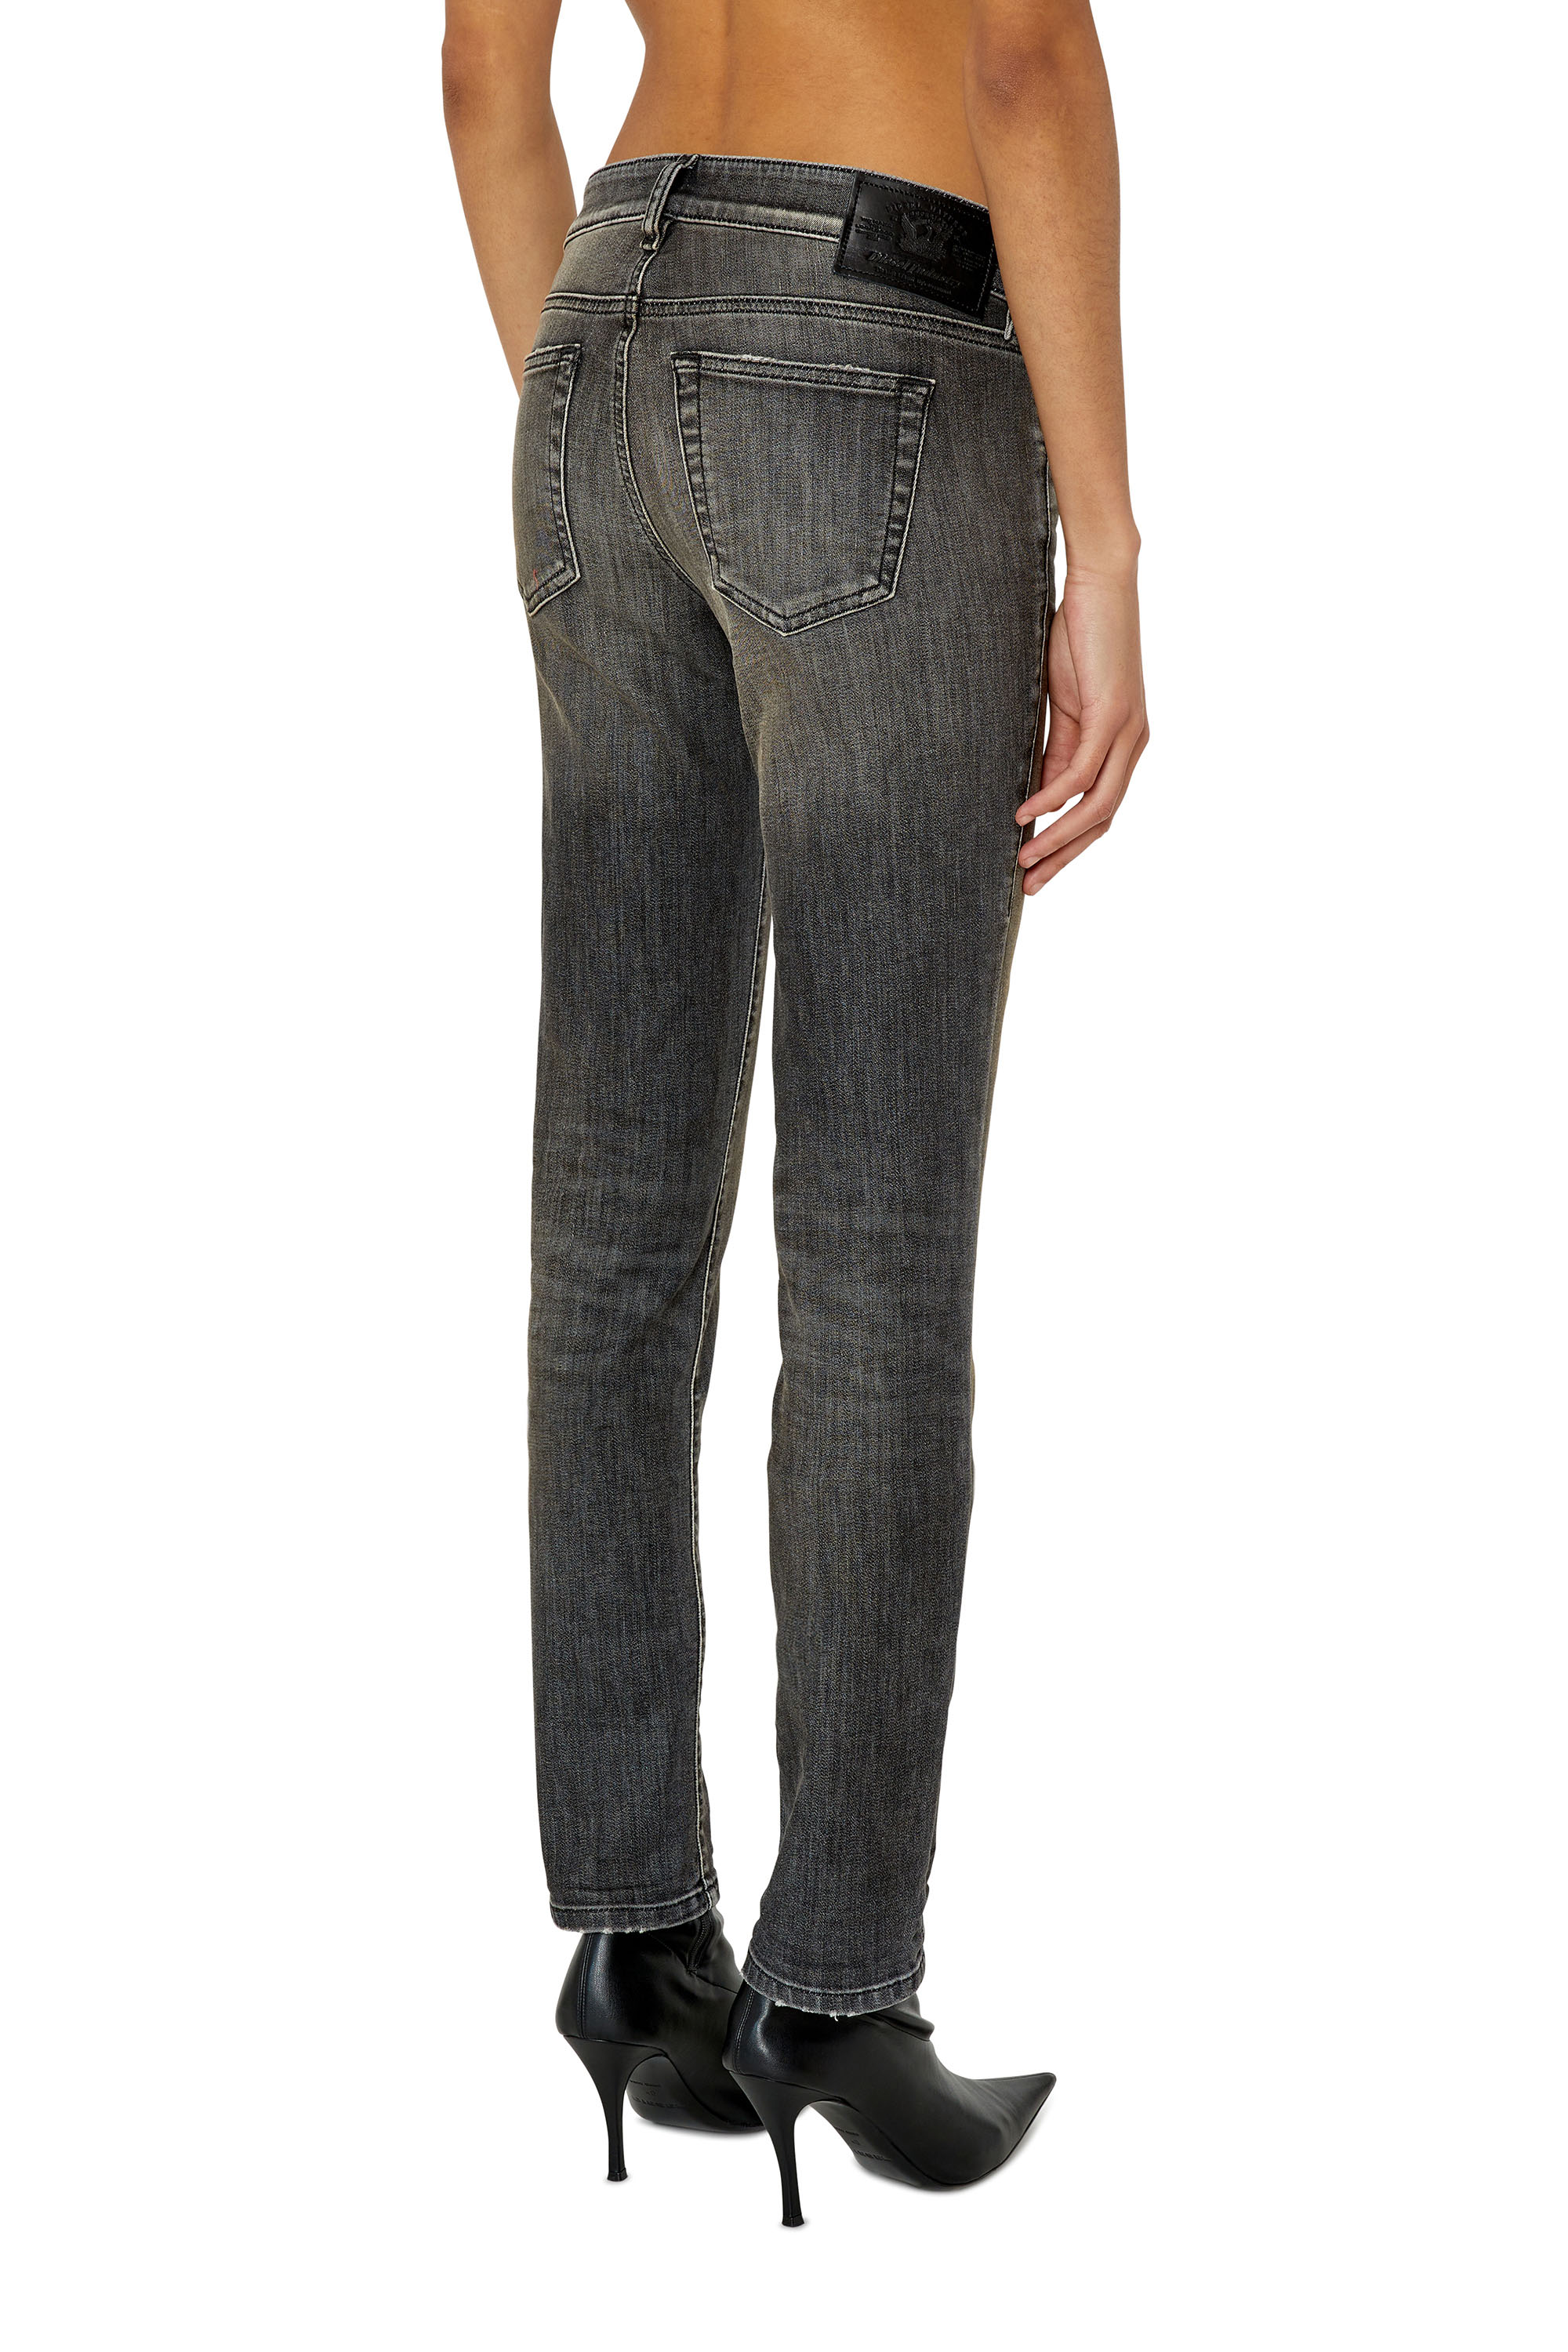 Diesel - Slim D-Ollies JoggJeans® 09F01, Black/Dark grey - Image 3